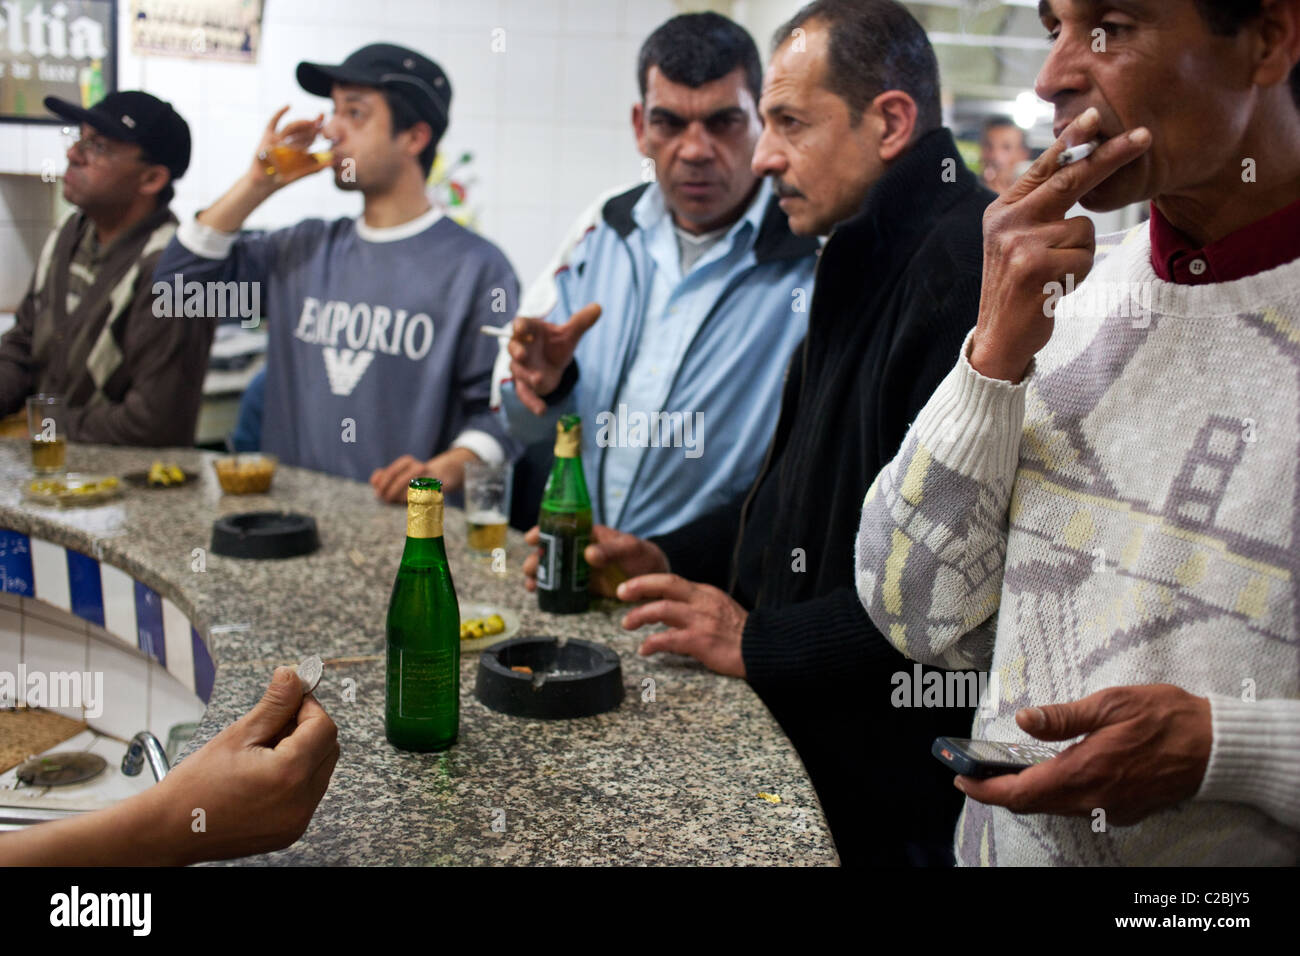 Los hombres beben alcohol (Celtia cerveza y whisky) en el mostrador de bar en Sfax, Túnez. Foto de stock